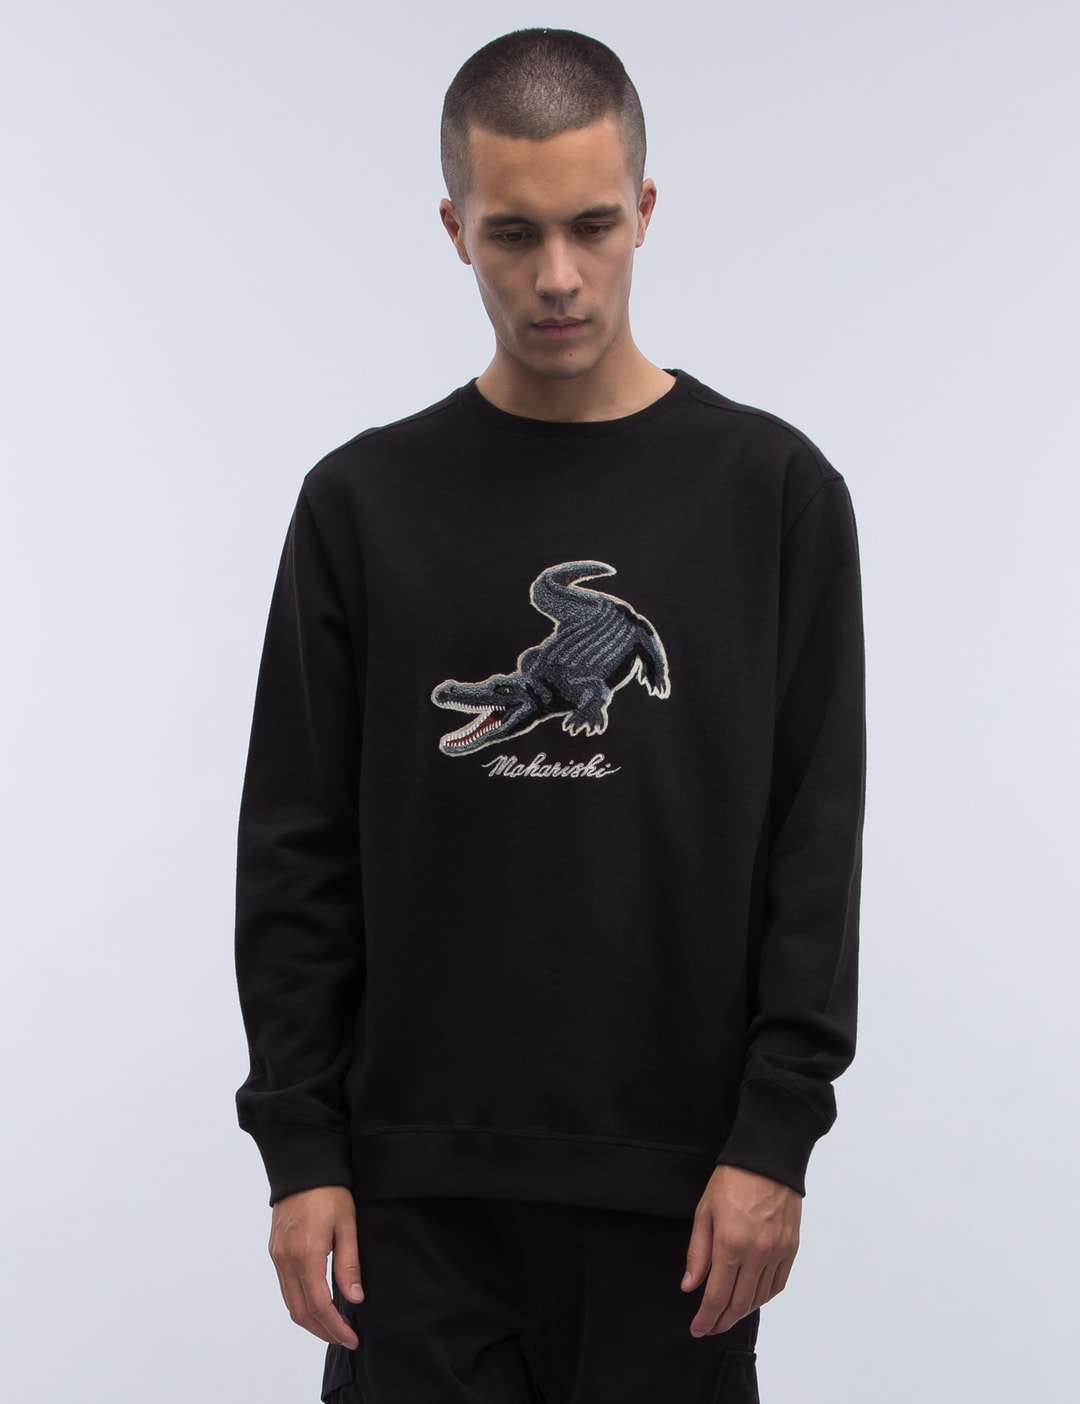 Grooming Unisex Men Women Streetwear Graphic Sweater Black / L